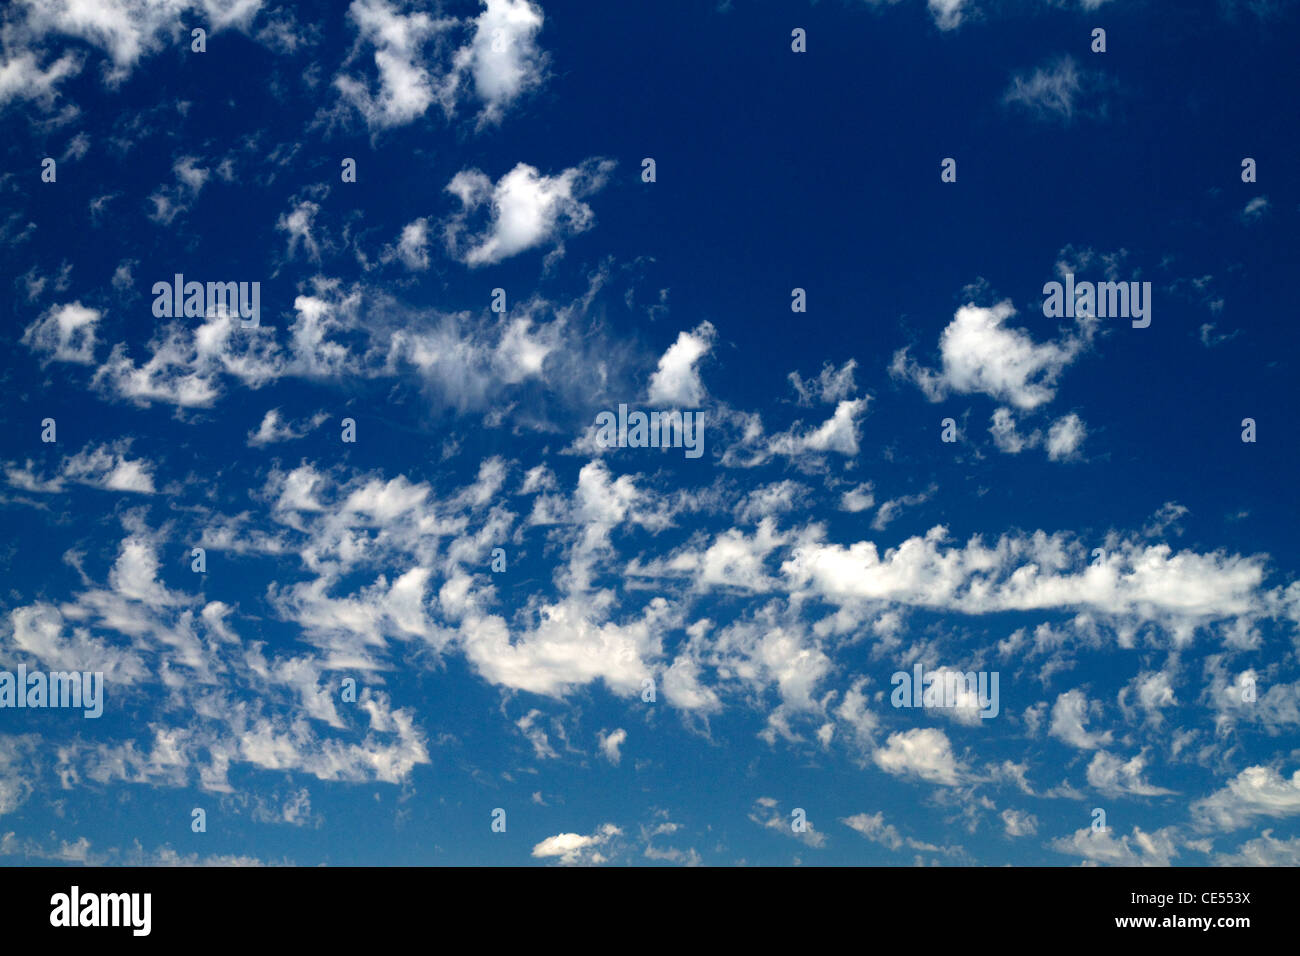 Cirruswolken am blauen Himmel. Stockfoto